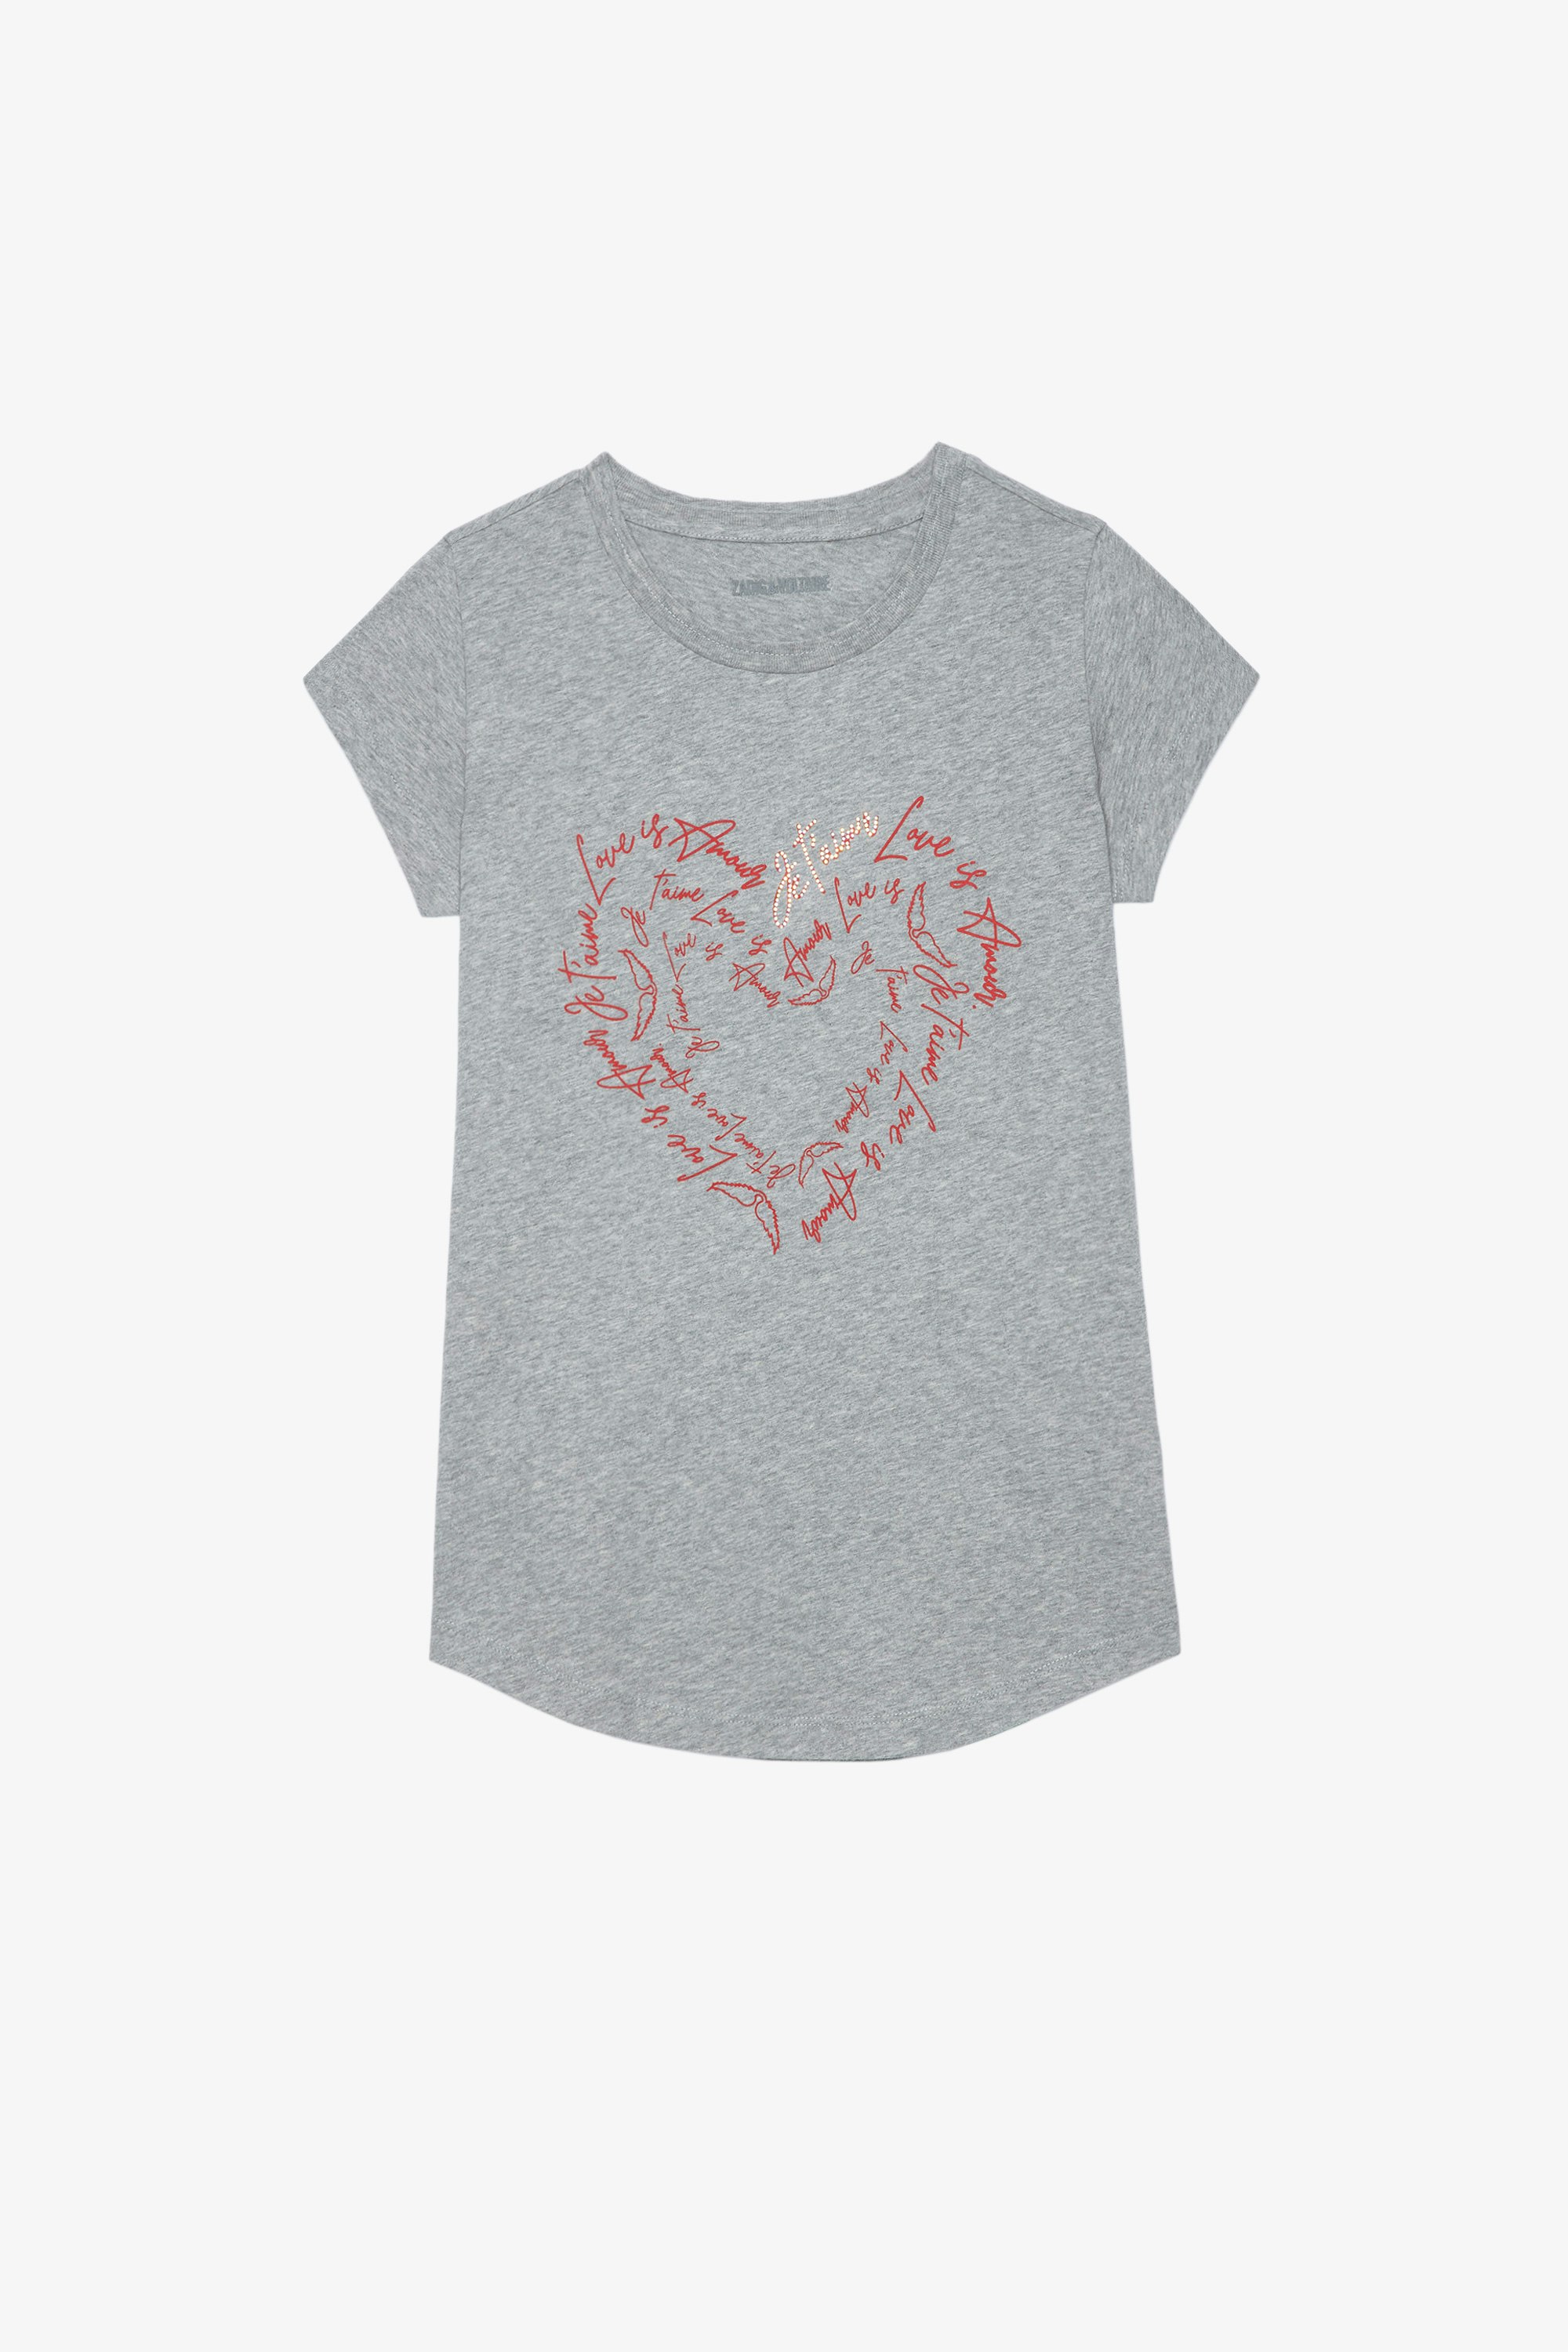 T-Shirt Skinny Heart Damen-T-Shirt aus grau melierter Baumwolle mit Herz-Print und Kristallen